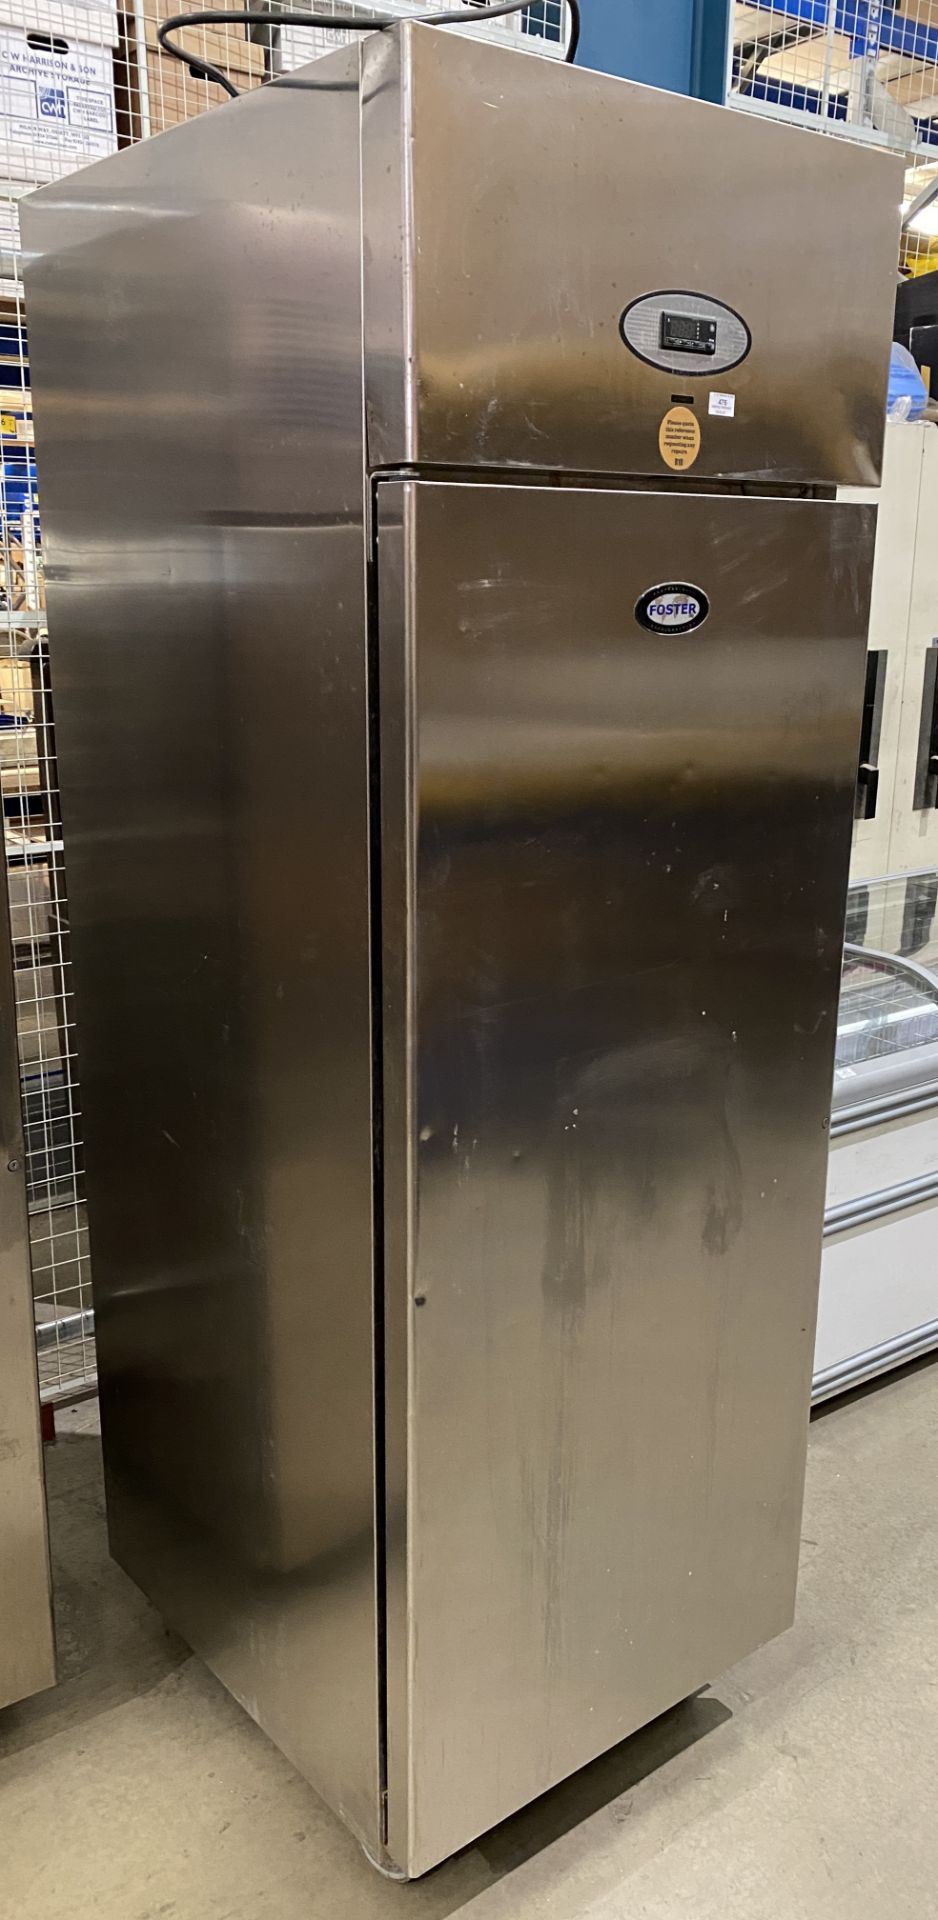 Foster model: PROG600H stainless steel single-door fridge, 200cm high (not run, - Image 2 of 5